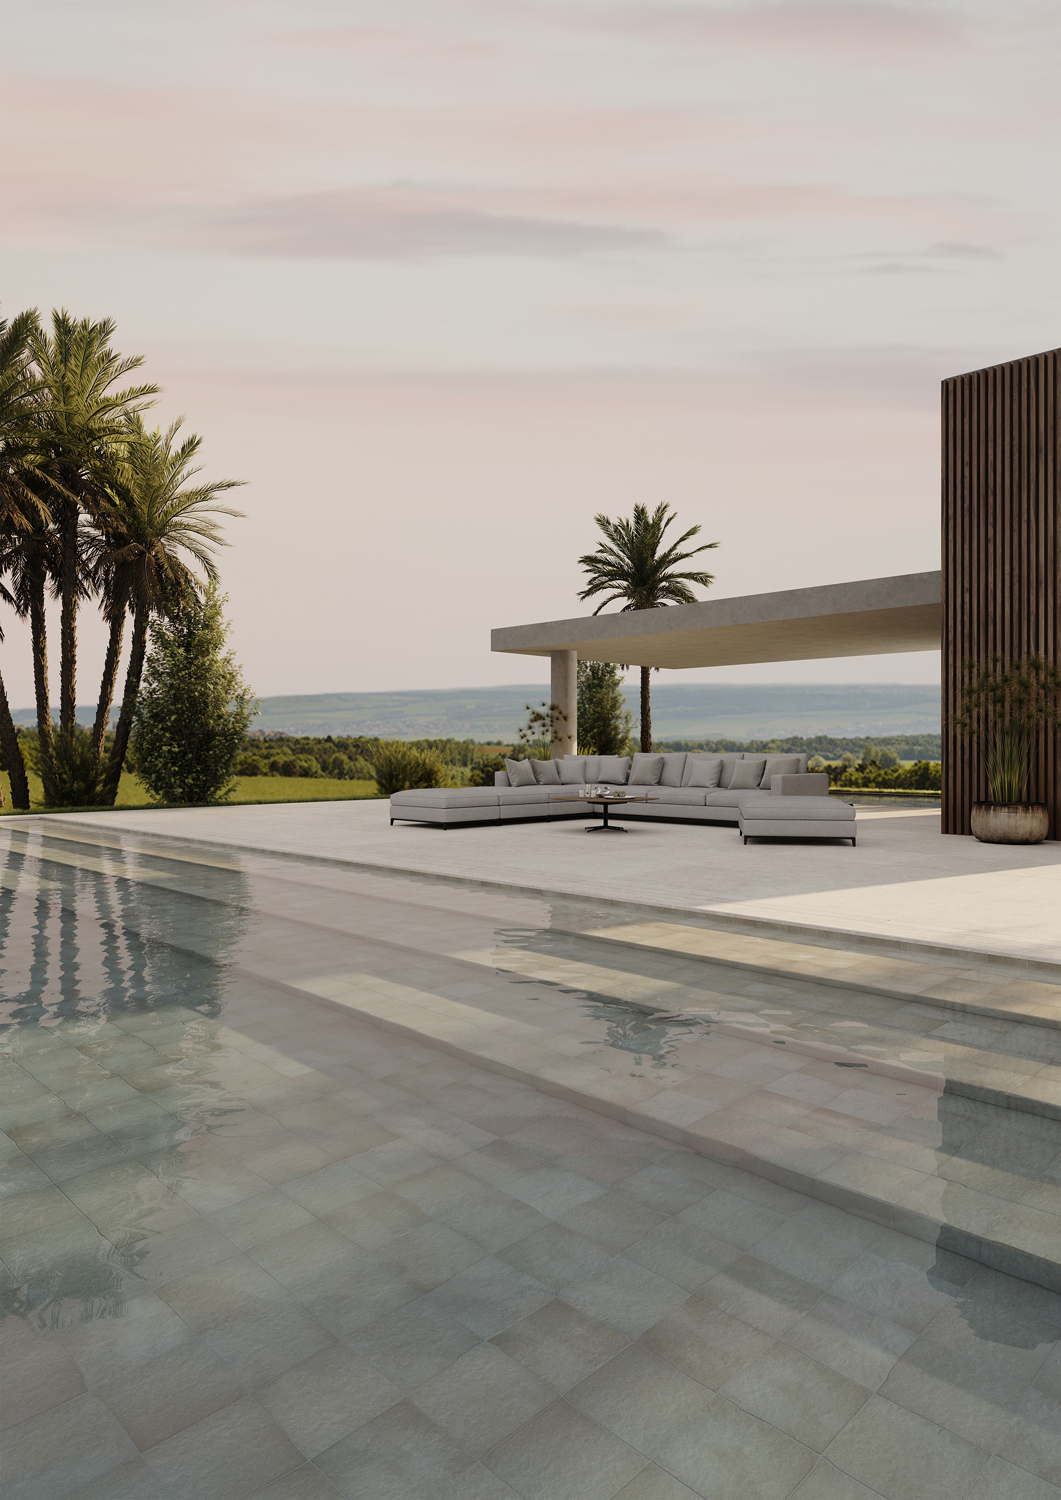 Os tons de cinza ajudam a criar uma piscina moderna e diferenciada